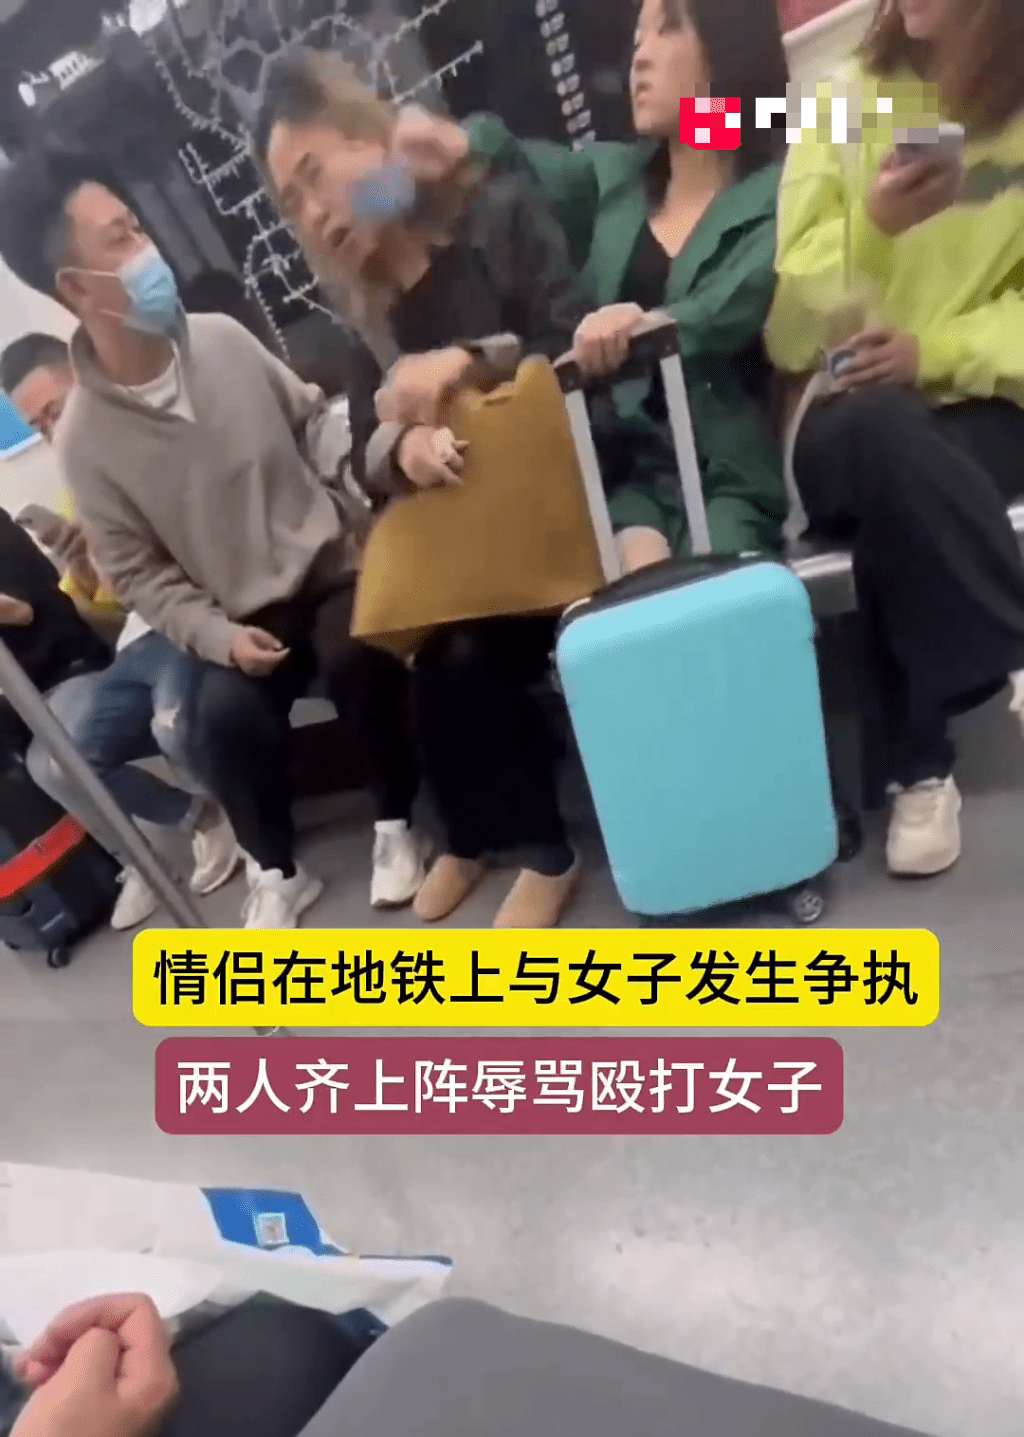 绿衫女乘客用持手机的手打向黑衫女的脸部。